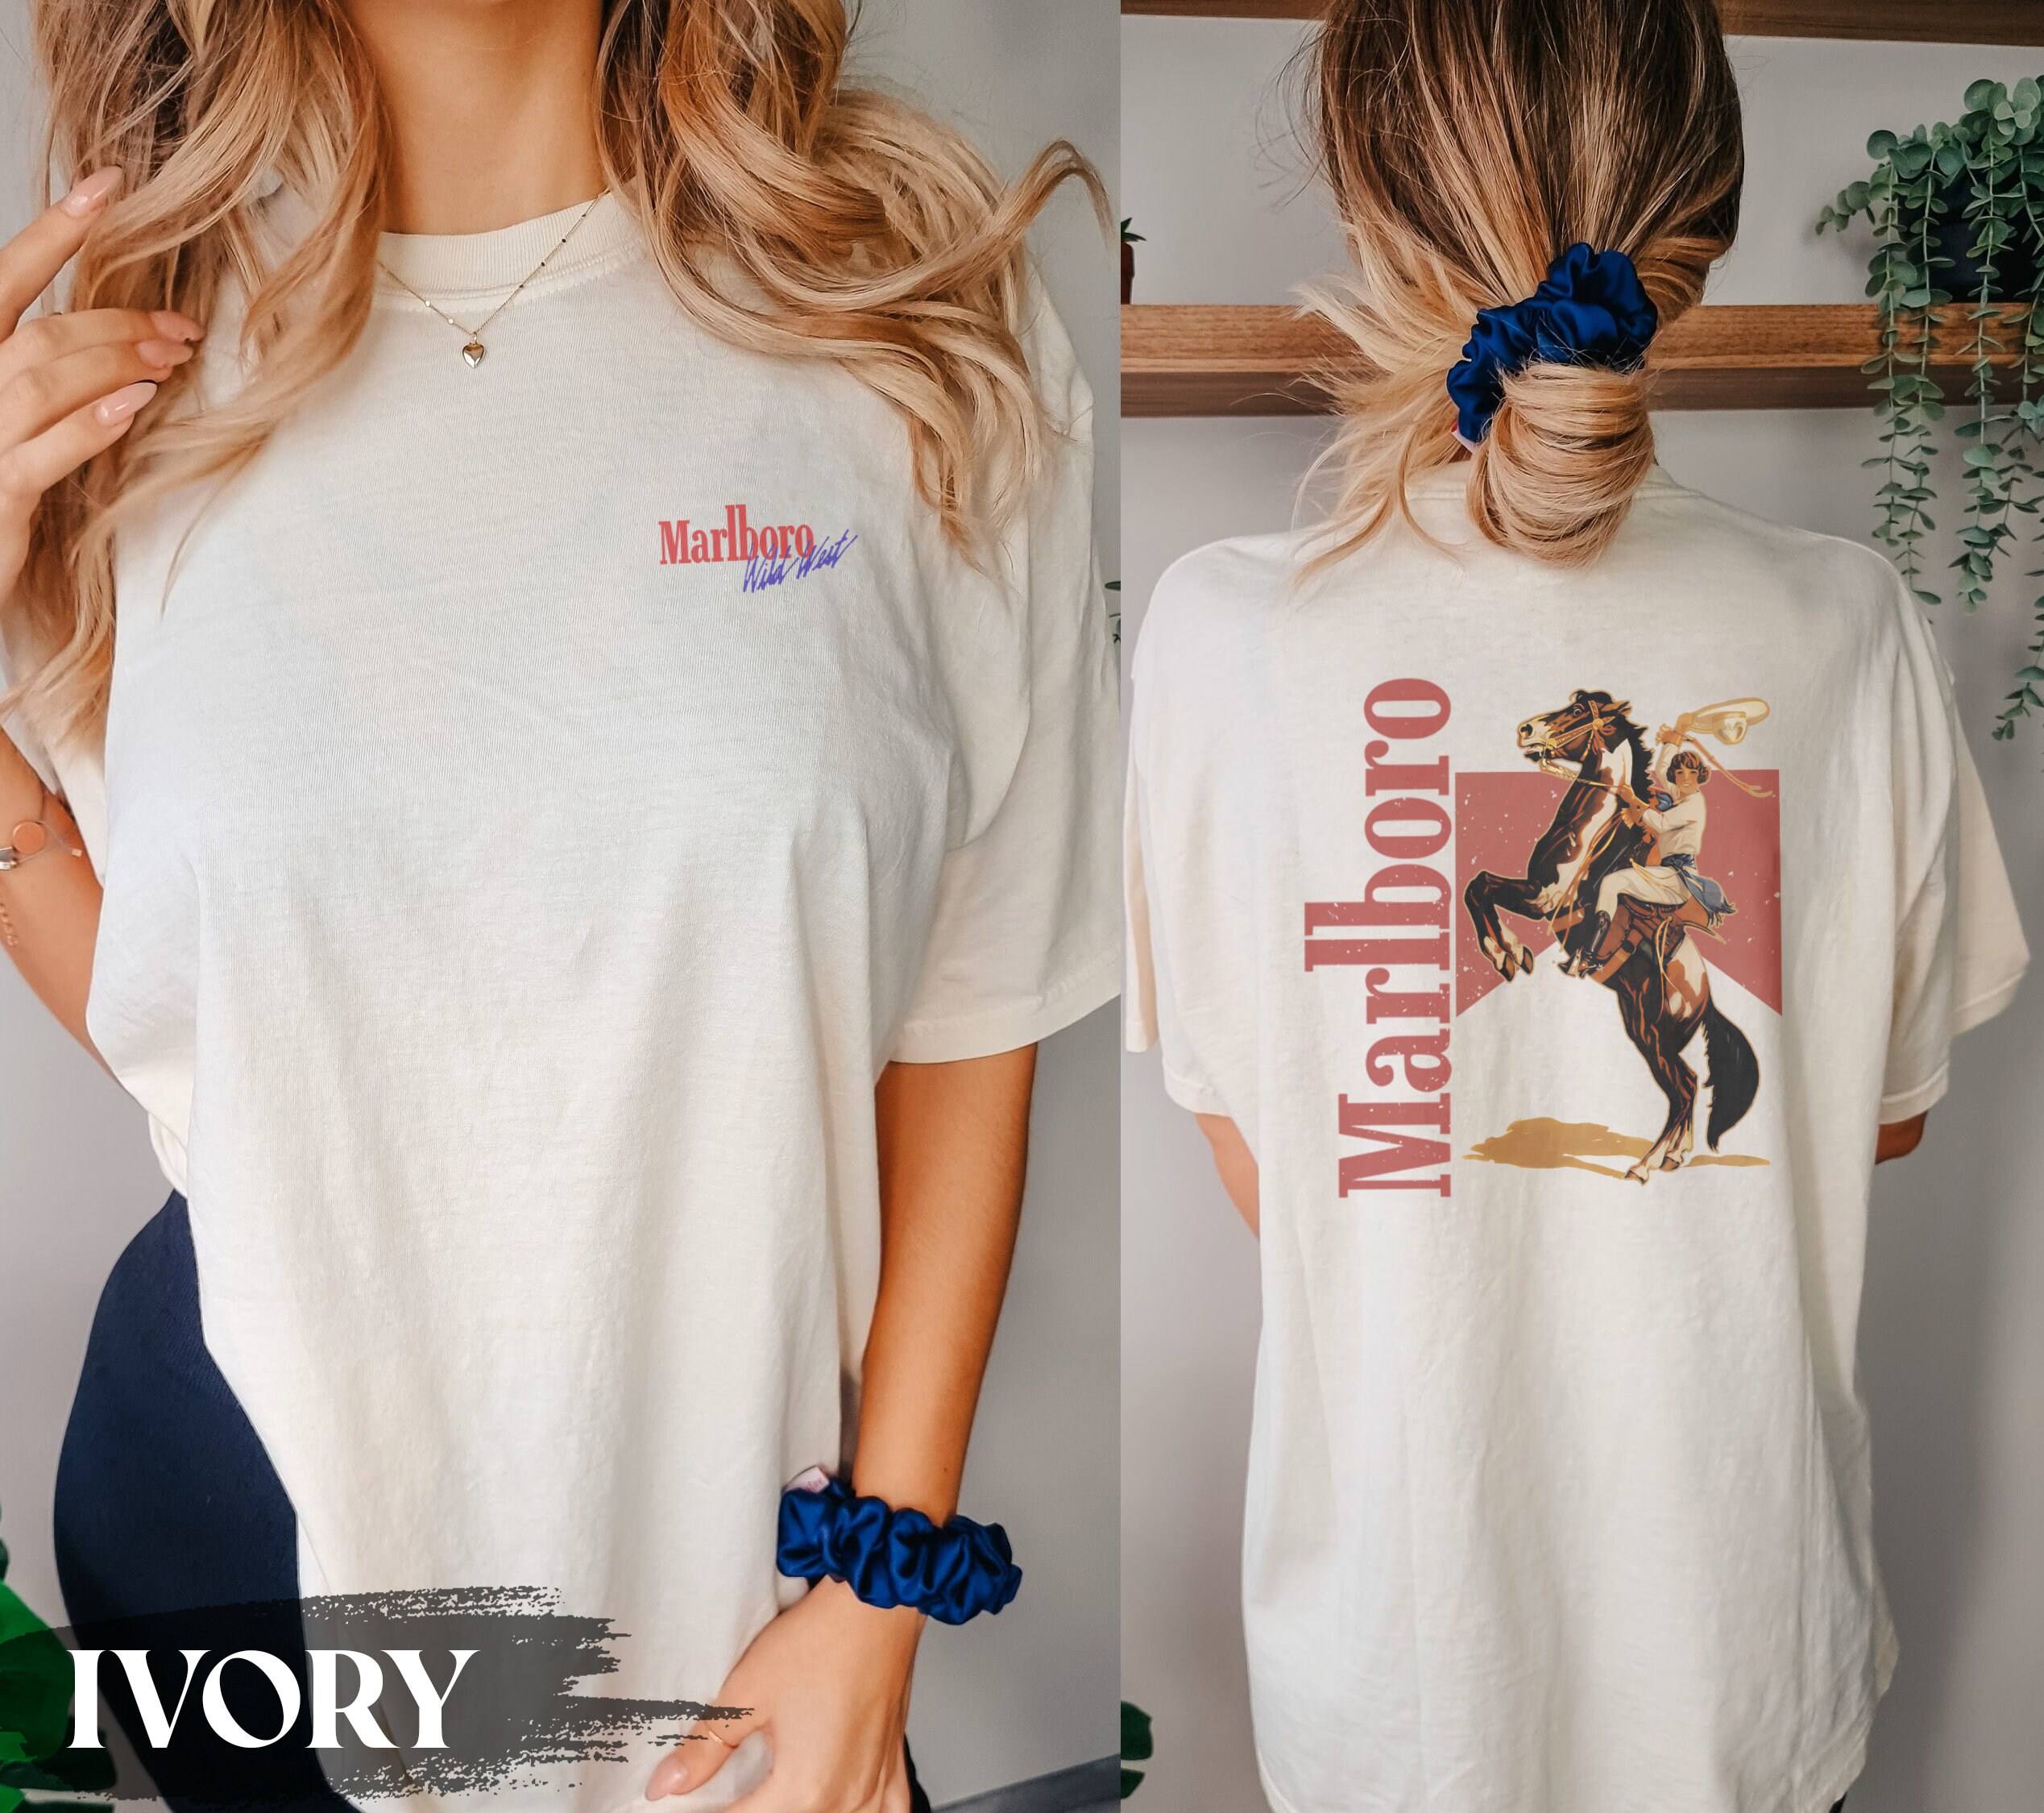 Discover Maglietta Vintage Marlboro Cowboy Wild West T-shirt